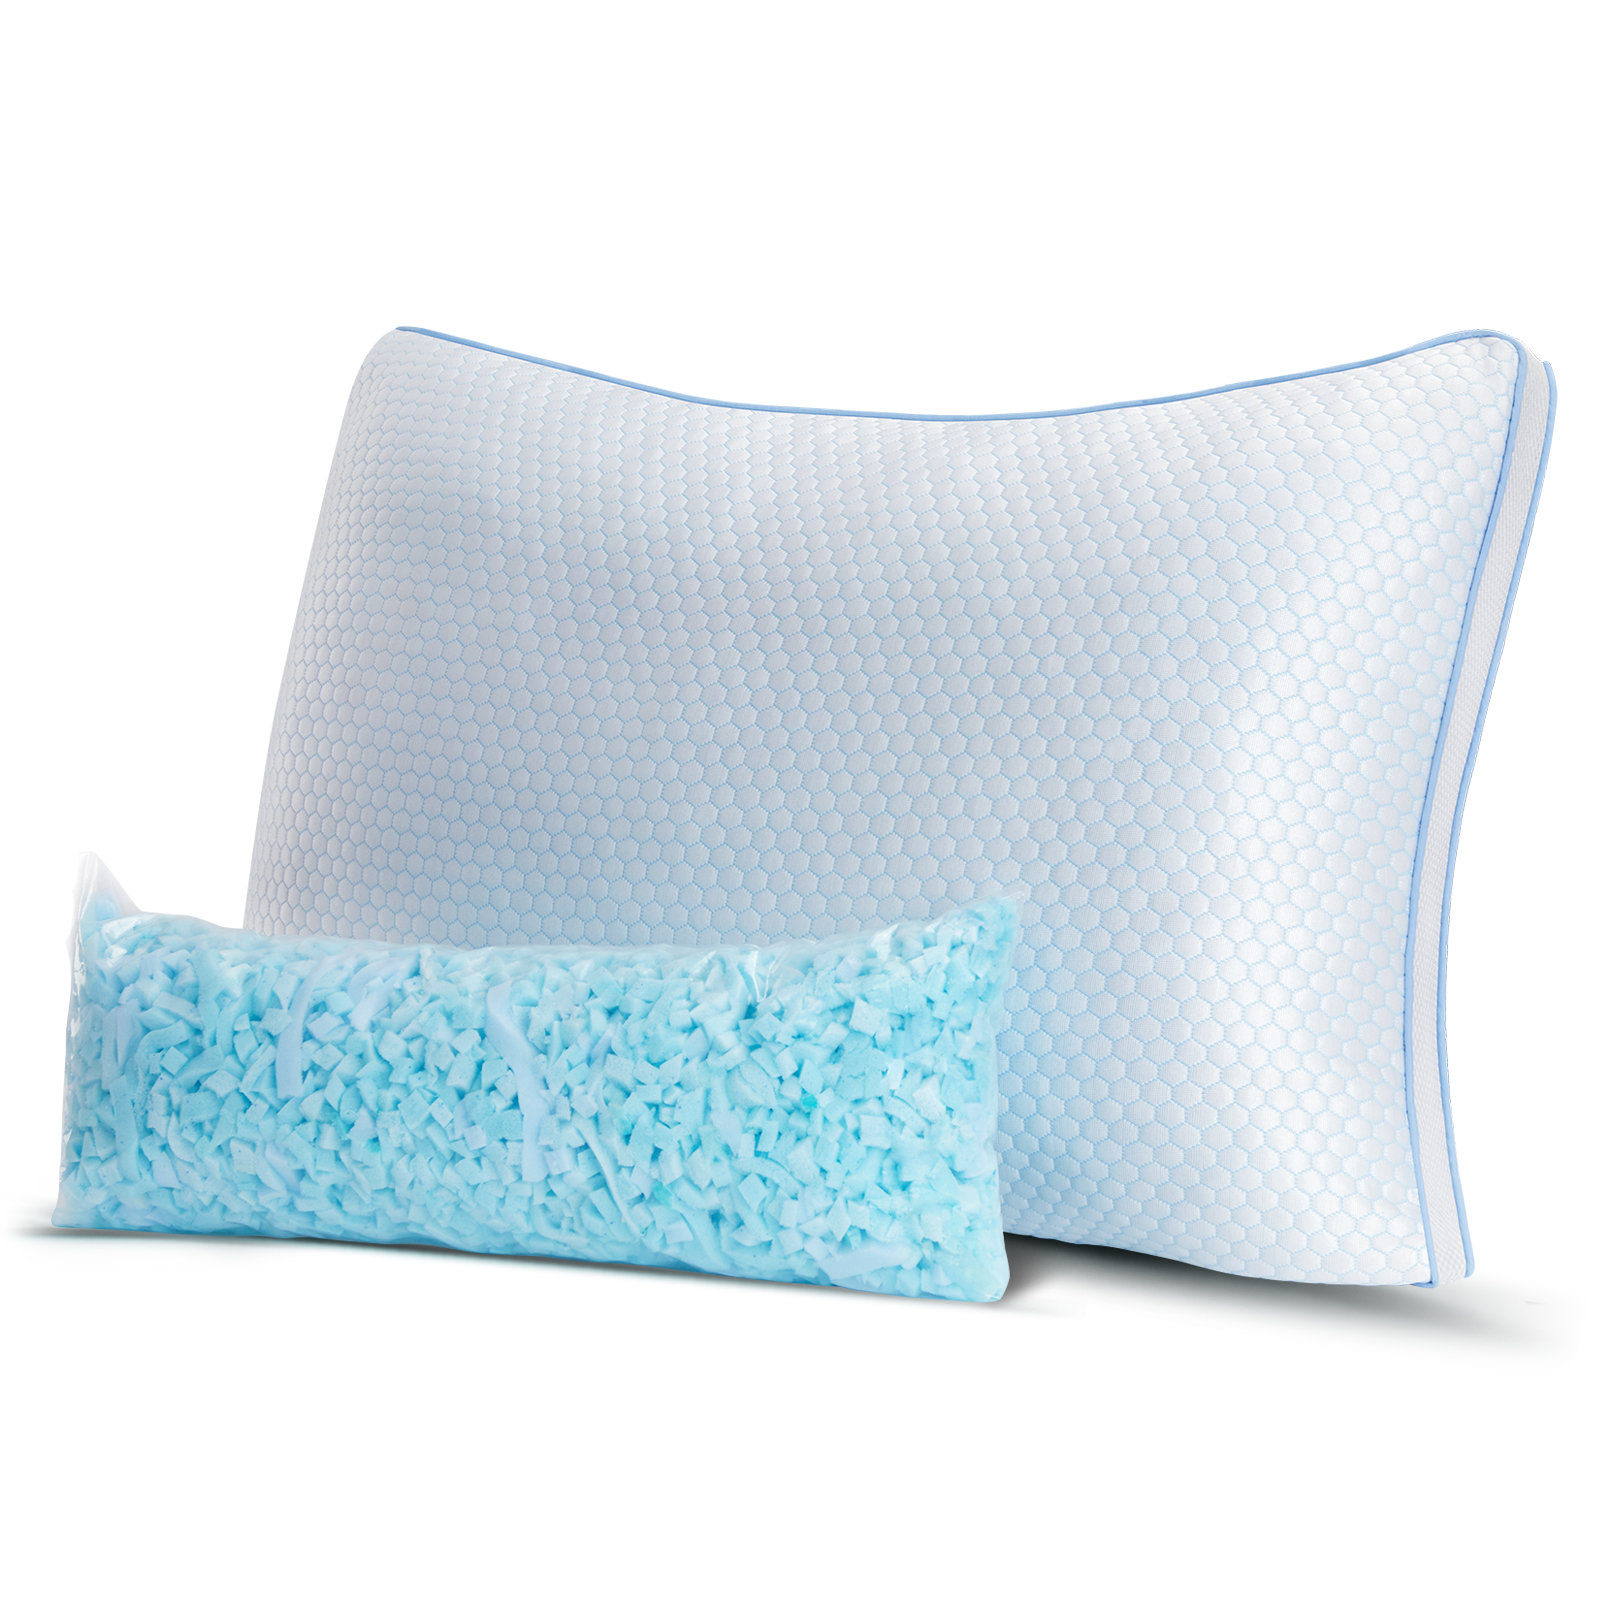 https://assets.wfcdn.com/im/03444494/compr-r85/2208/220811208/lugent-memory-foam-medium-cooling-pillow.jpg